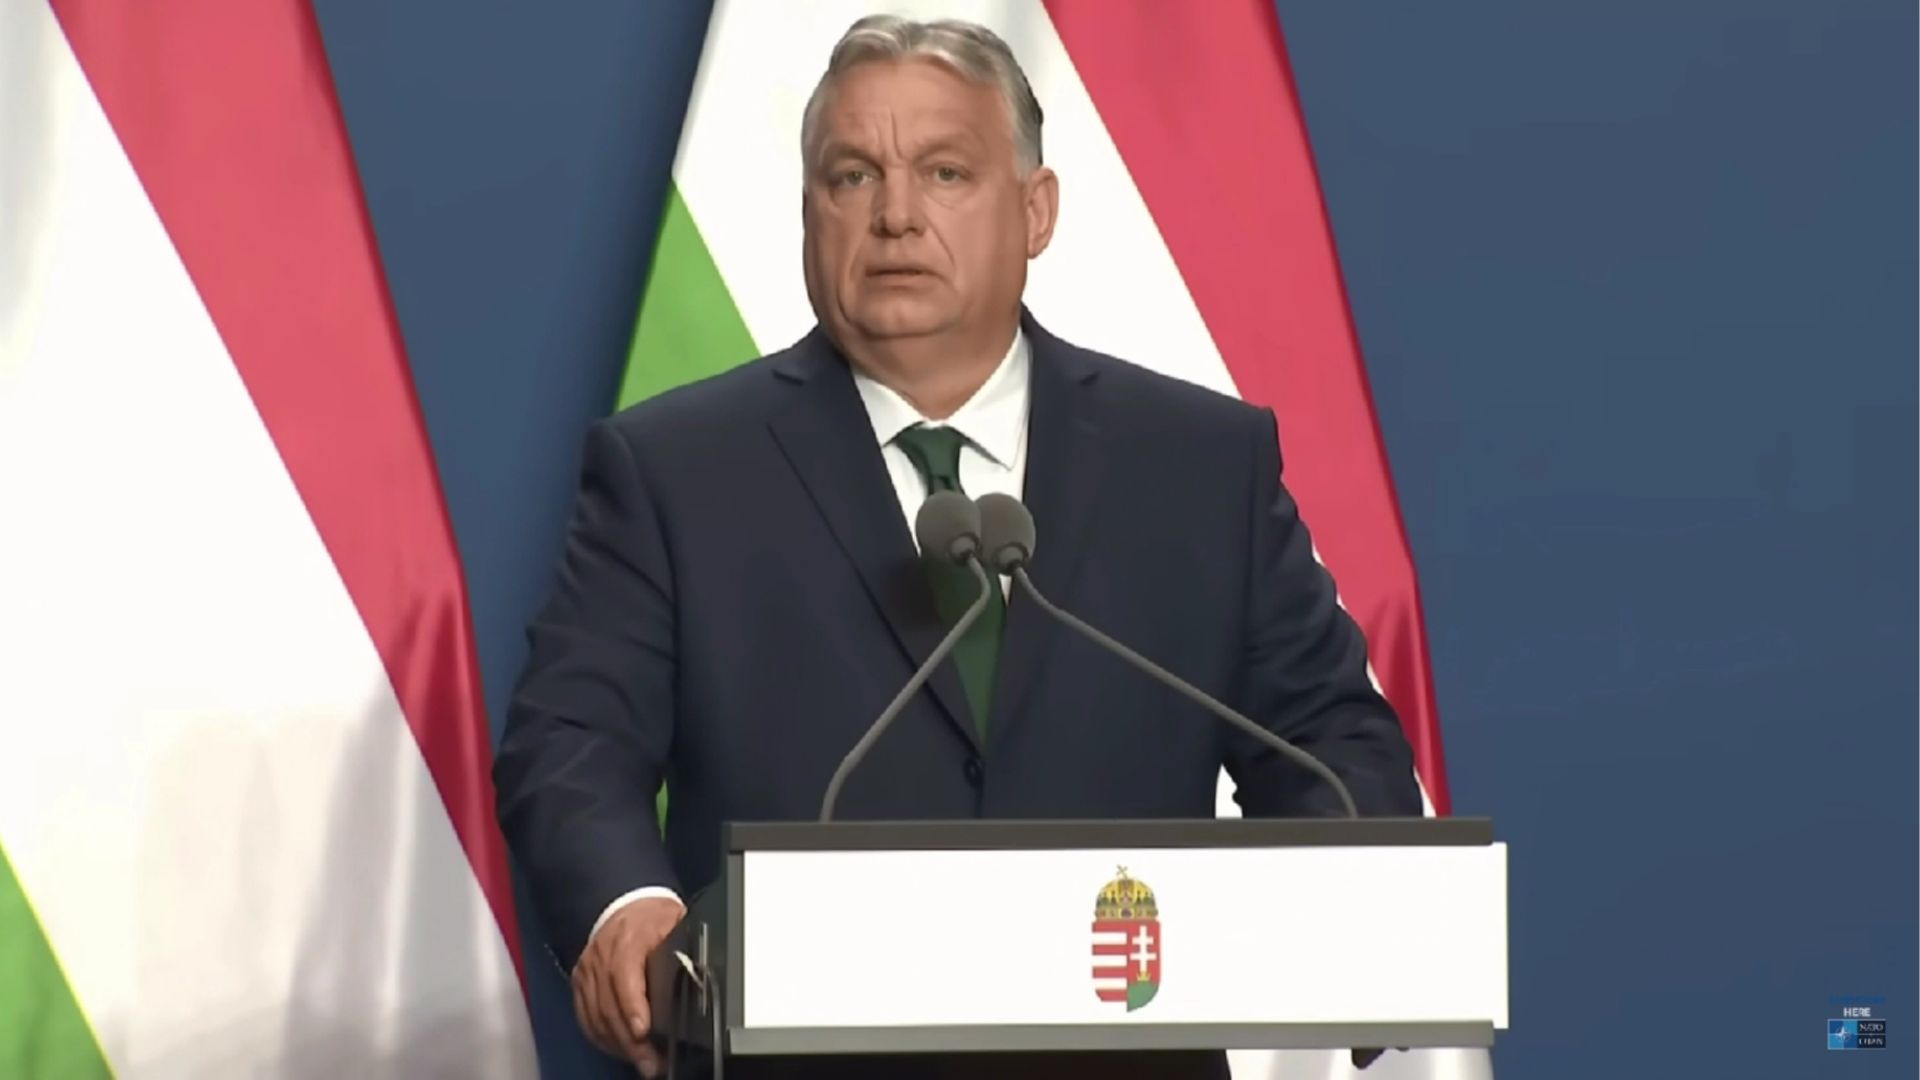 "Венгрия не будет участвовать в войне за пределами зоны ответственности НАТО" - Виктор Орбан